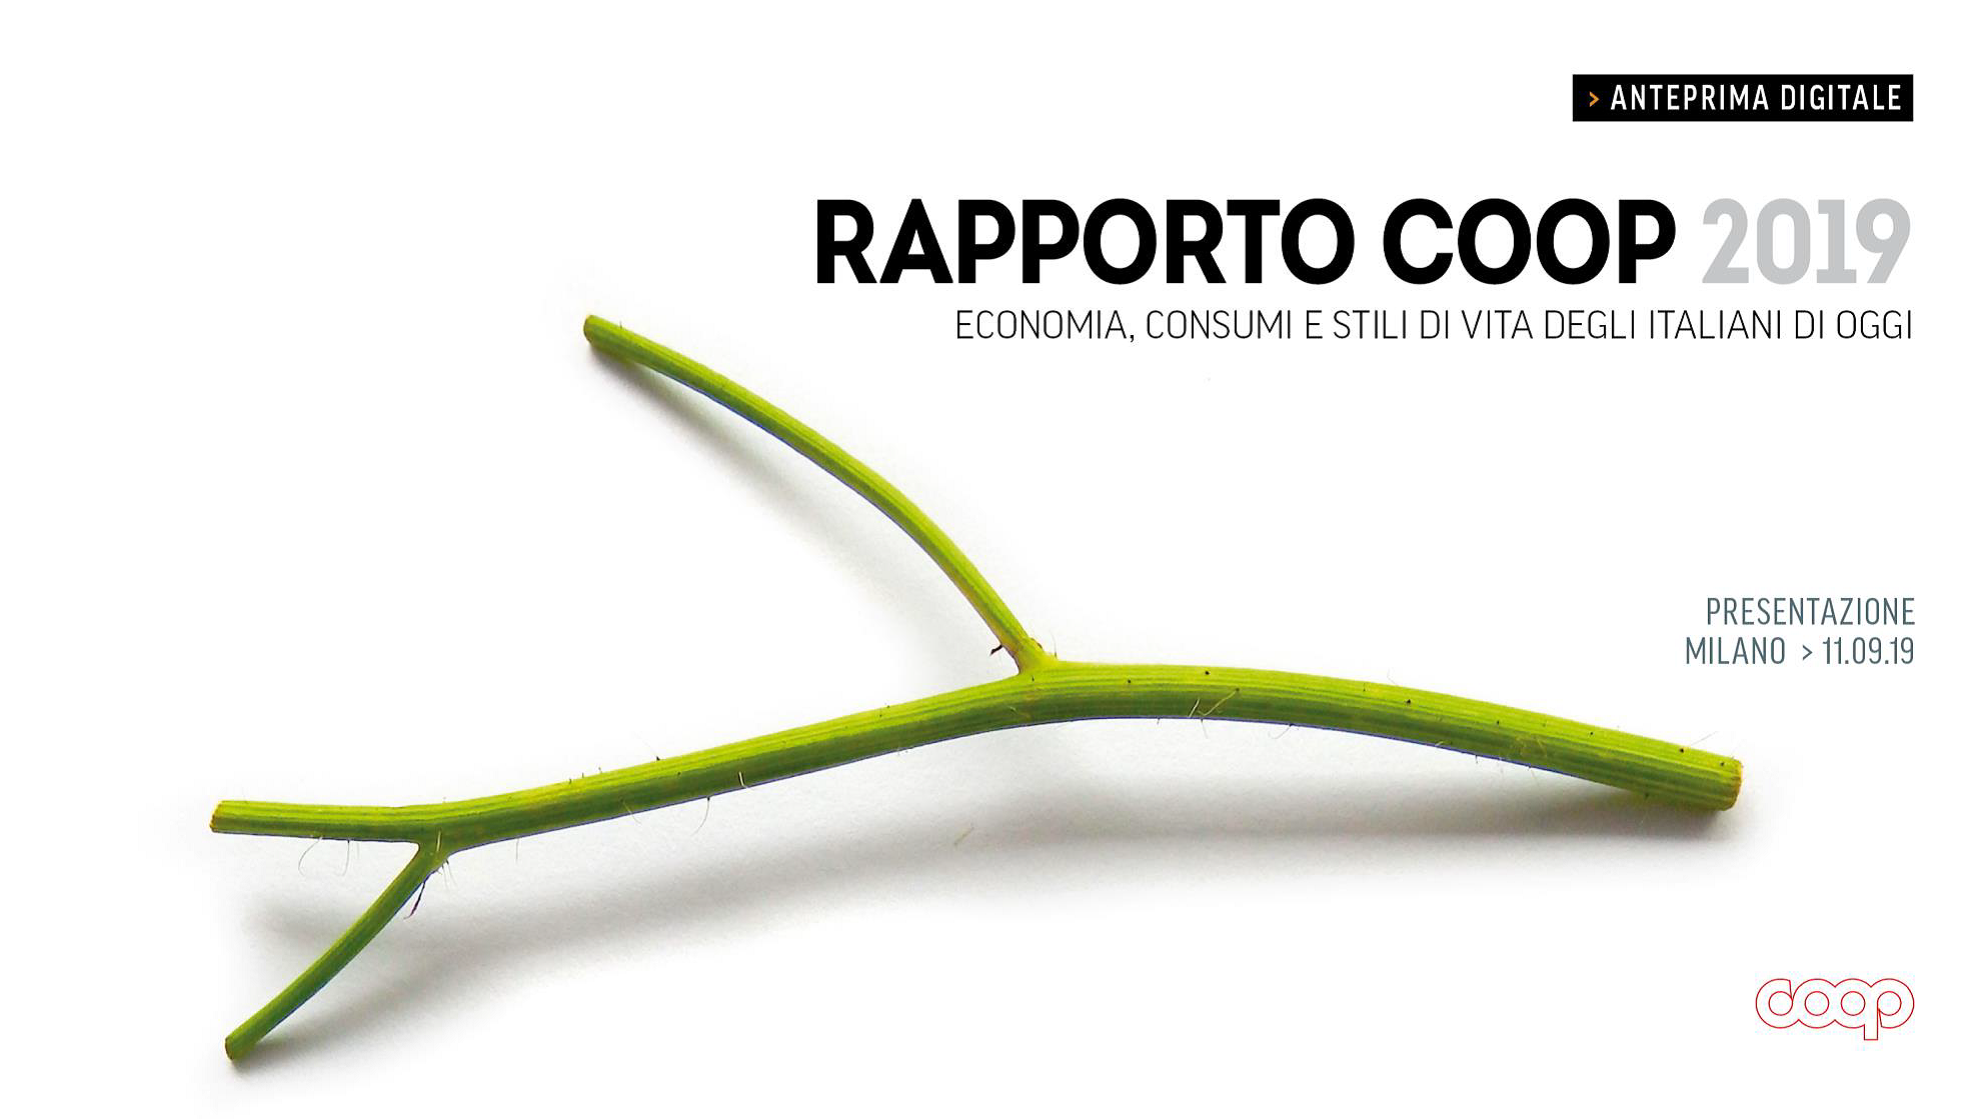 Presentata l’anteprima digitale del “Rapporto Coop 2019-Consumi e stili di vita degli italiani”